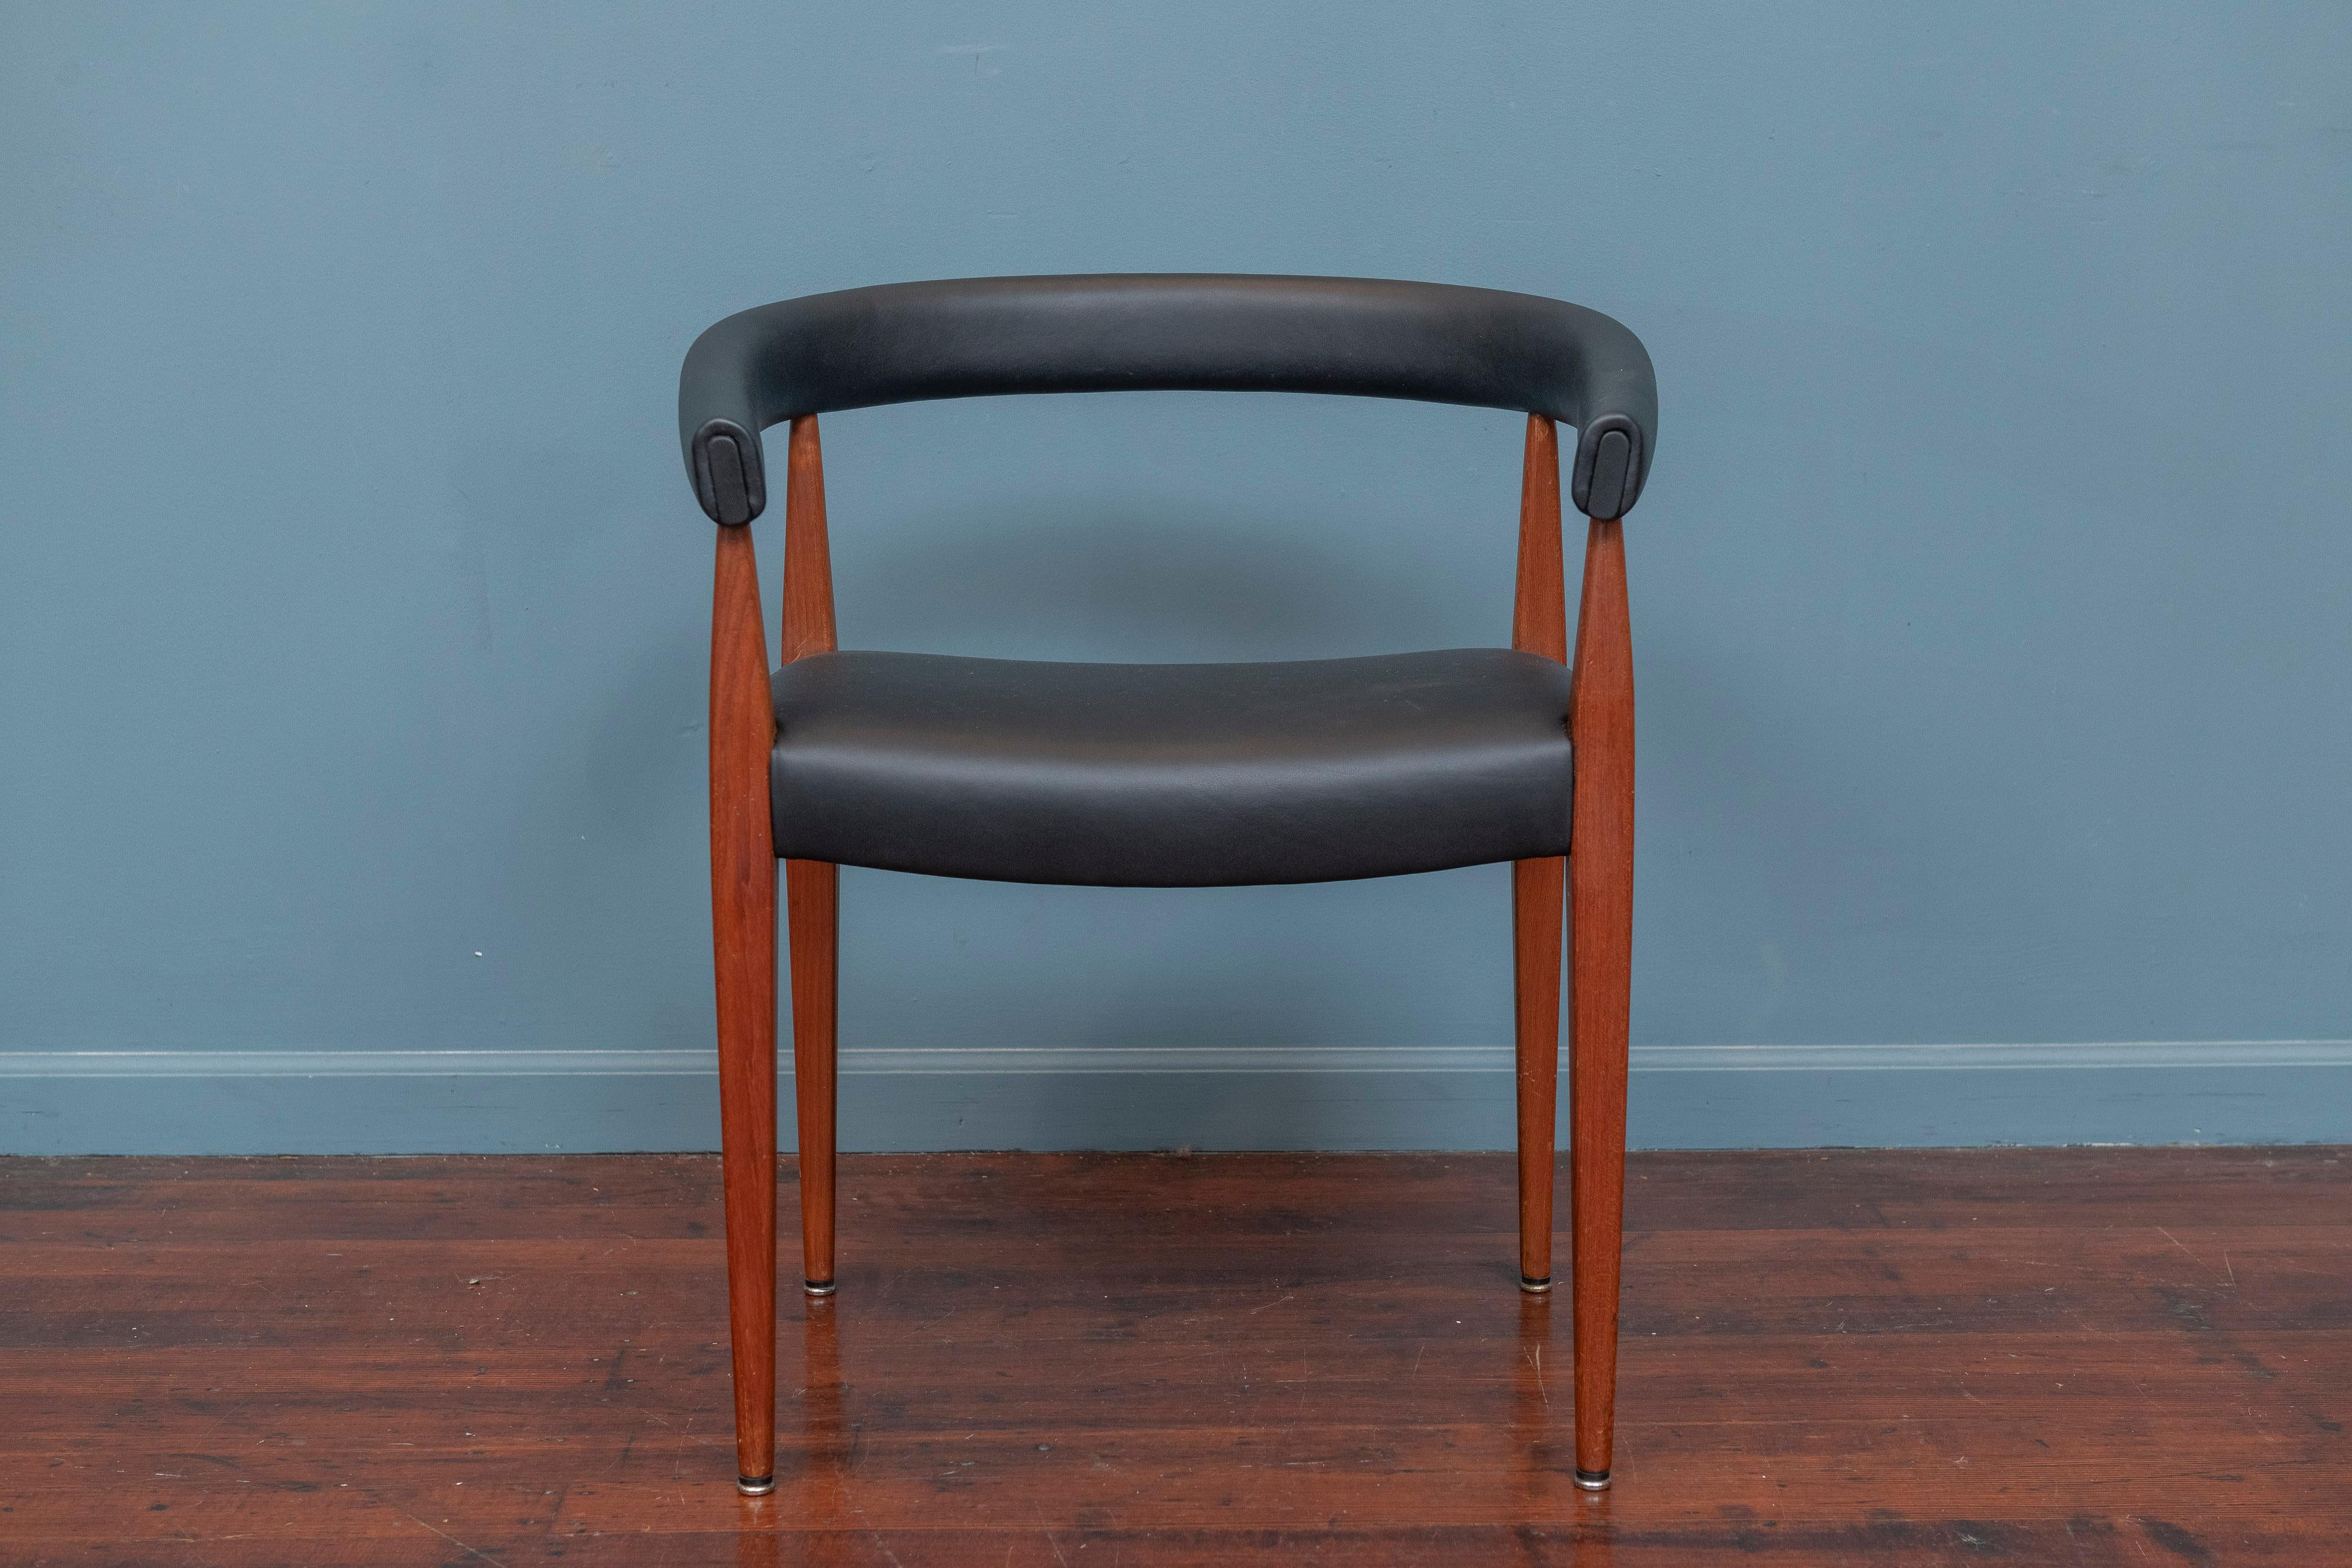 Seltener und skulpturaler Design-Sessel, entworfen von Nanna Ditzel, Modell #114 für Kolds Savvaerk, Dänemark. Teakholzrahmen in sehr gutem Originalzustand mit neuer schwarzer Lederpolsterung, bereit, genossen zu werden.